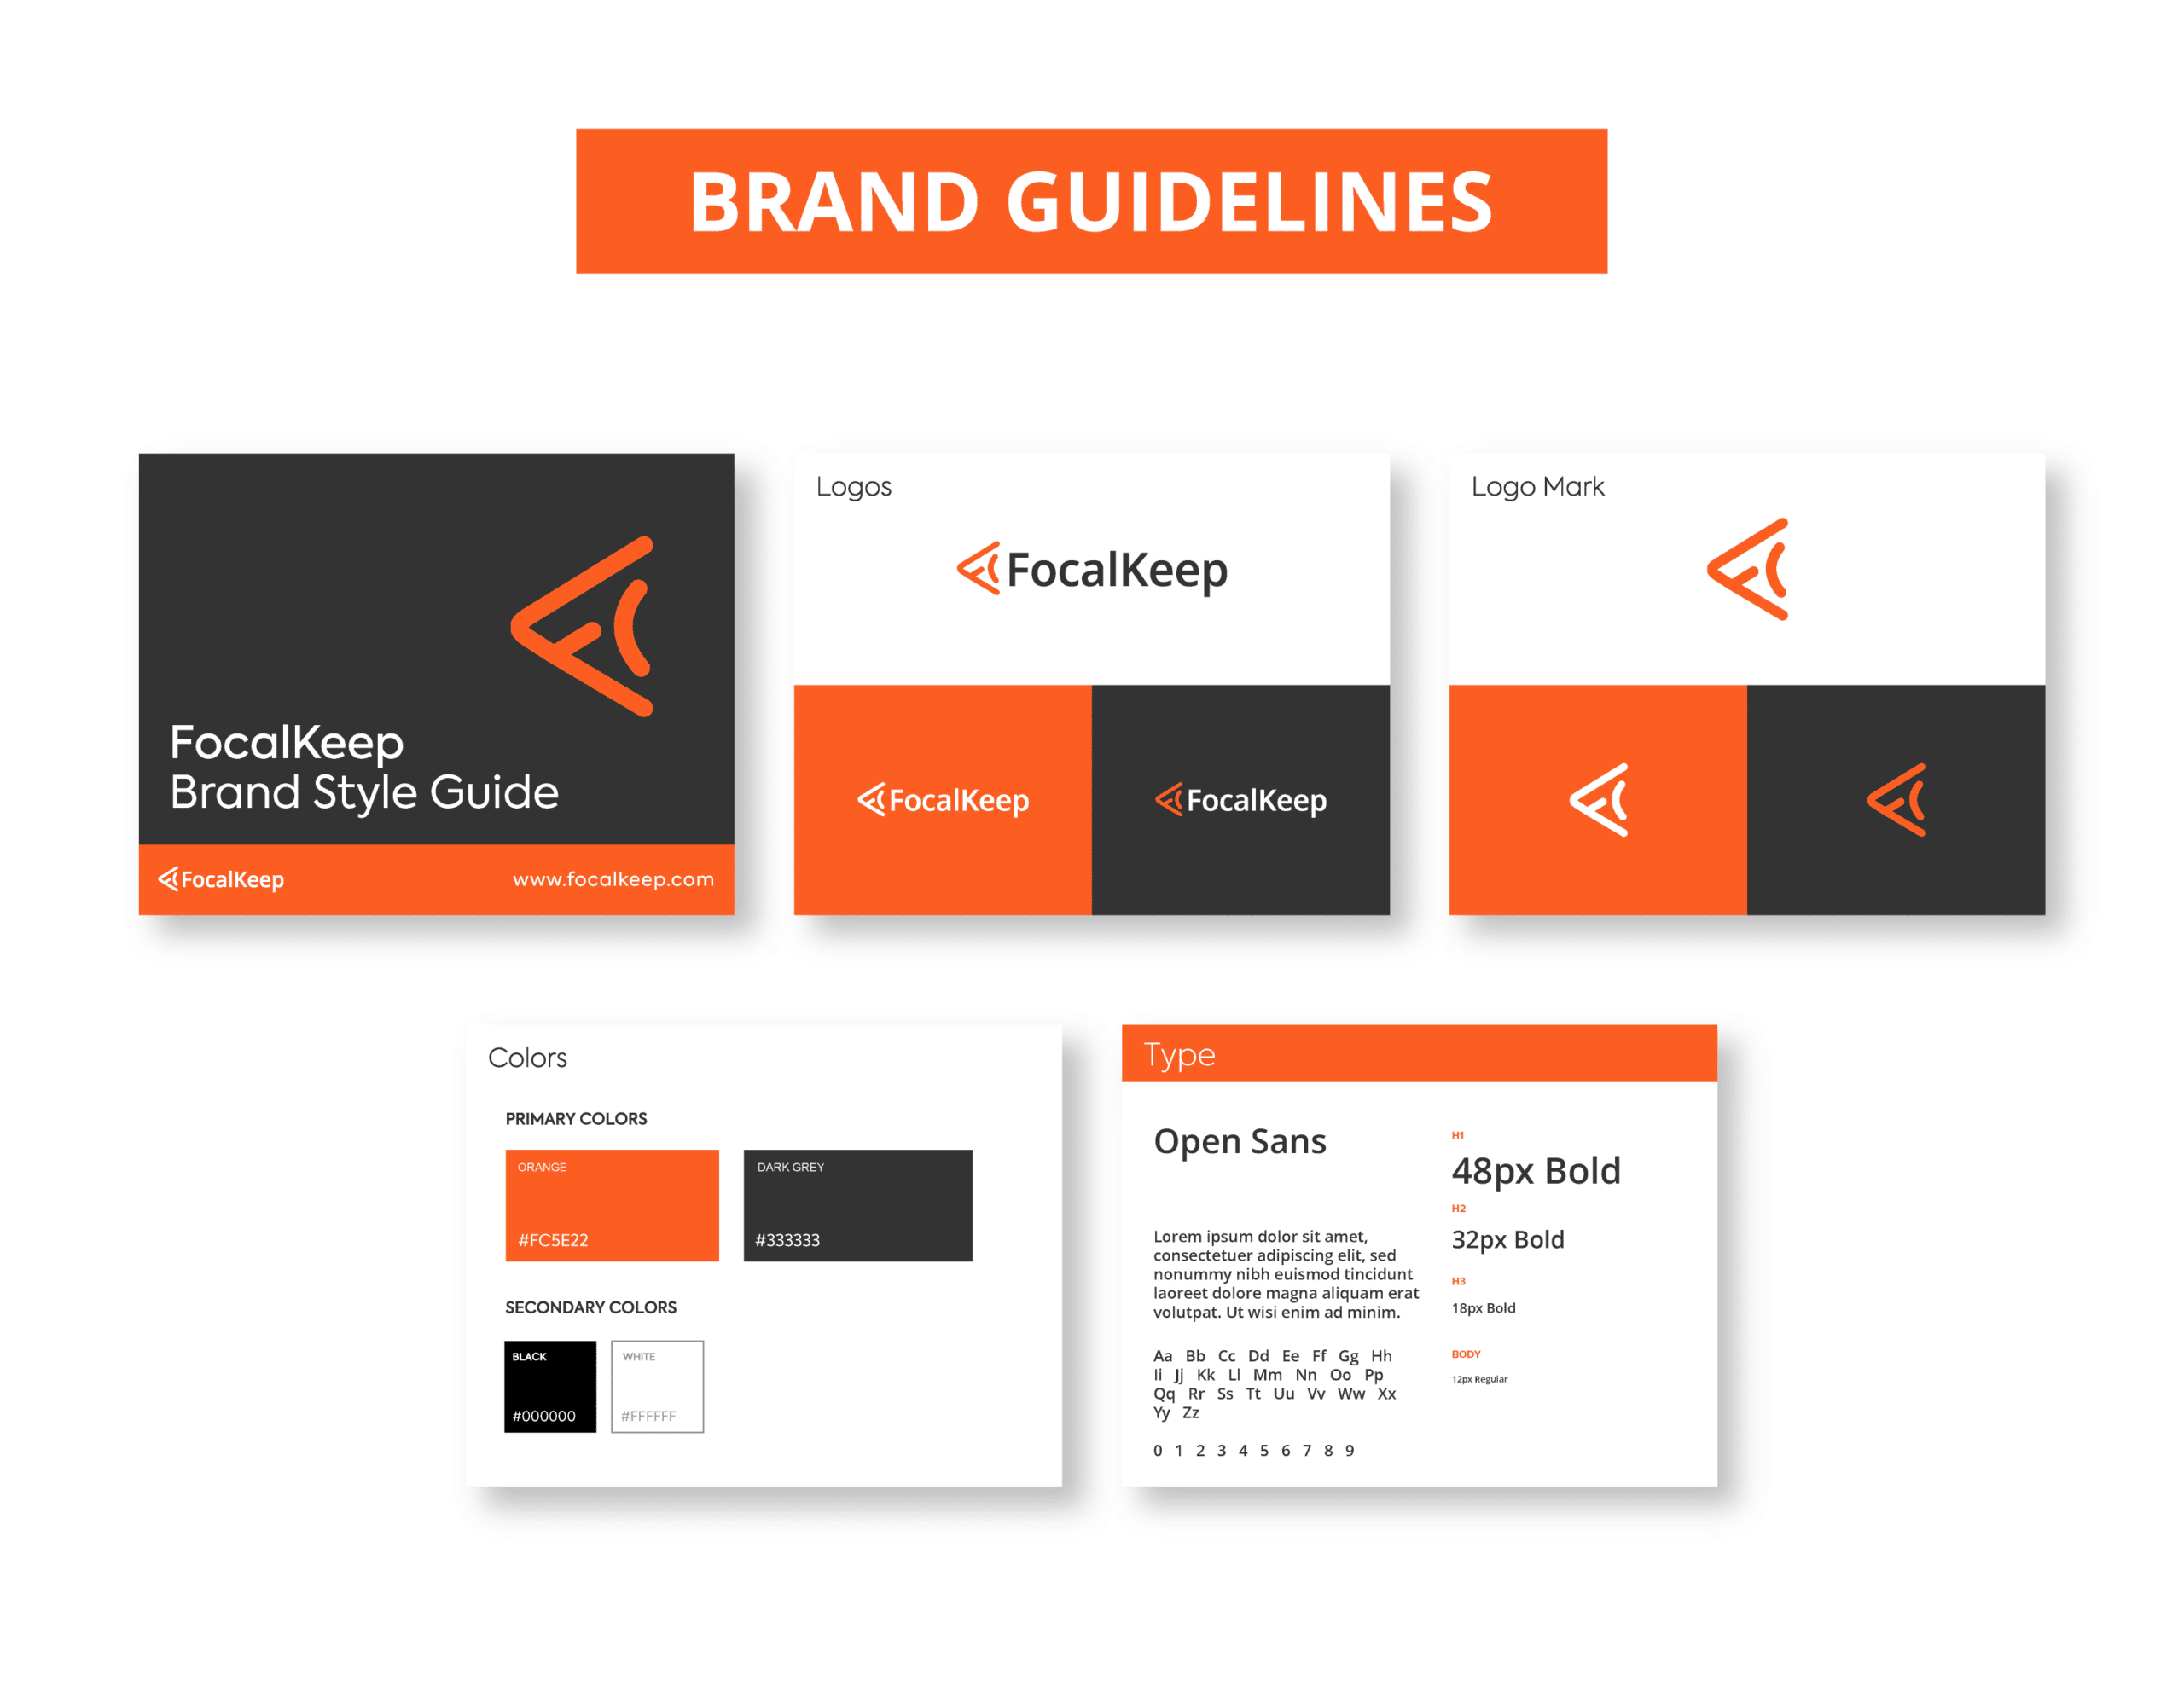 03Focal_Keep__Branding Guidelines